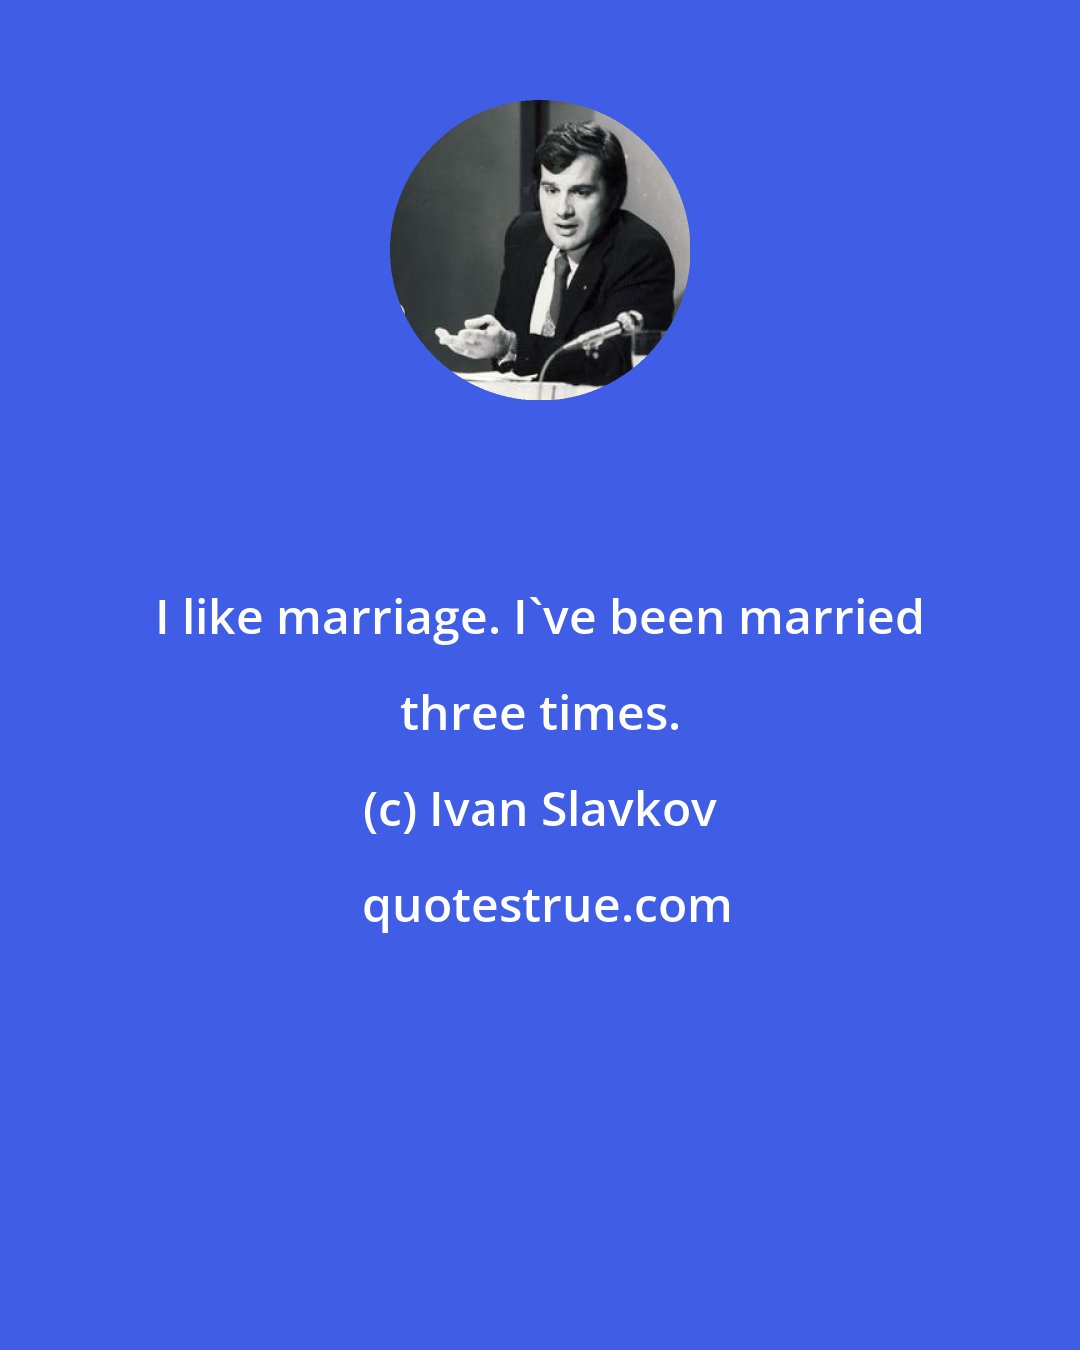 Ivan Slavkov: I like marriage. I've been married three times.